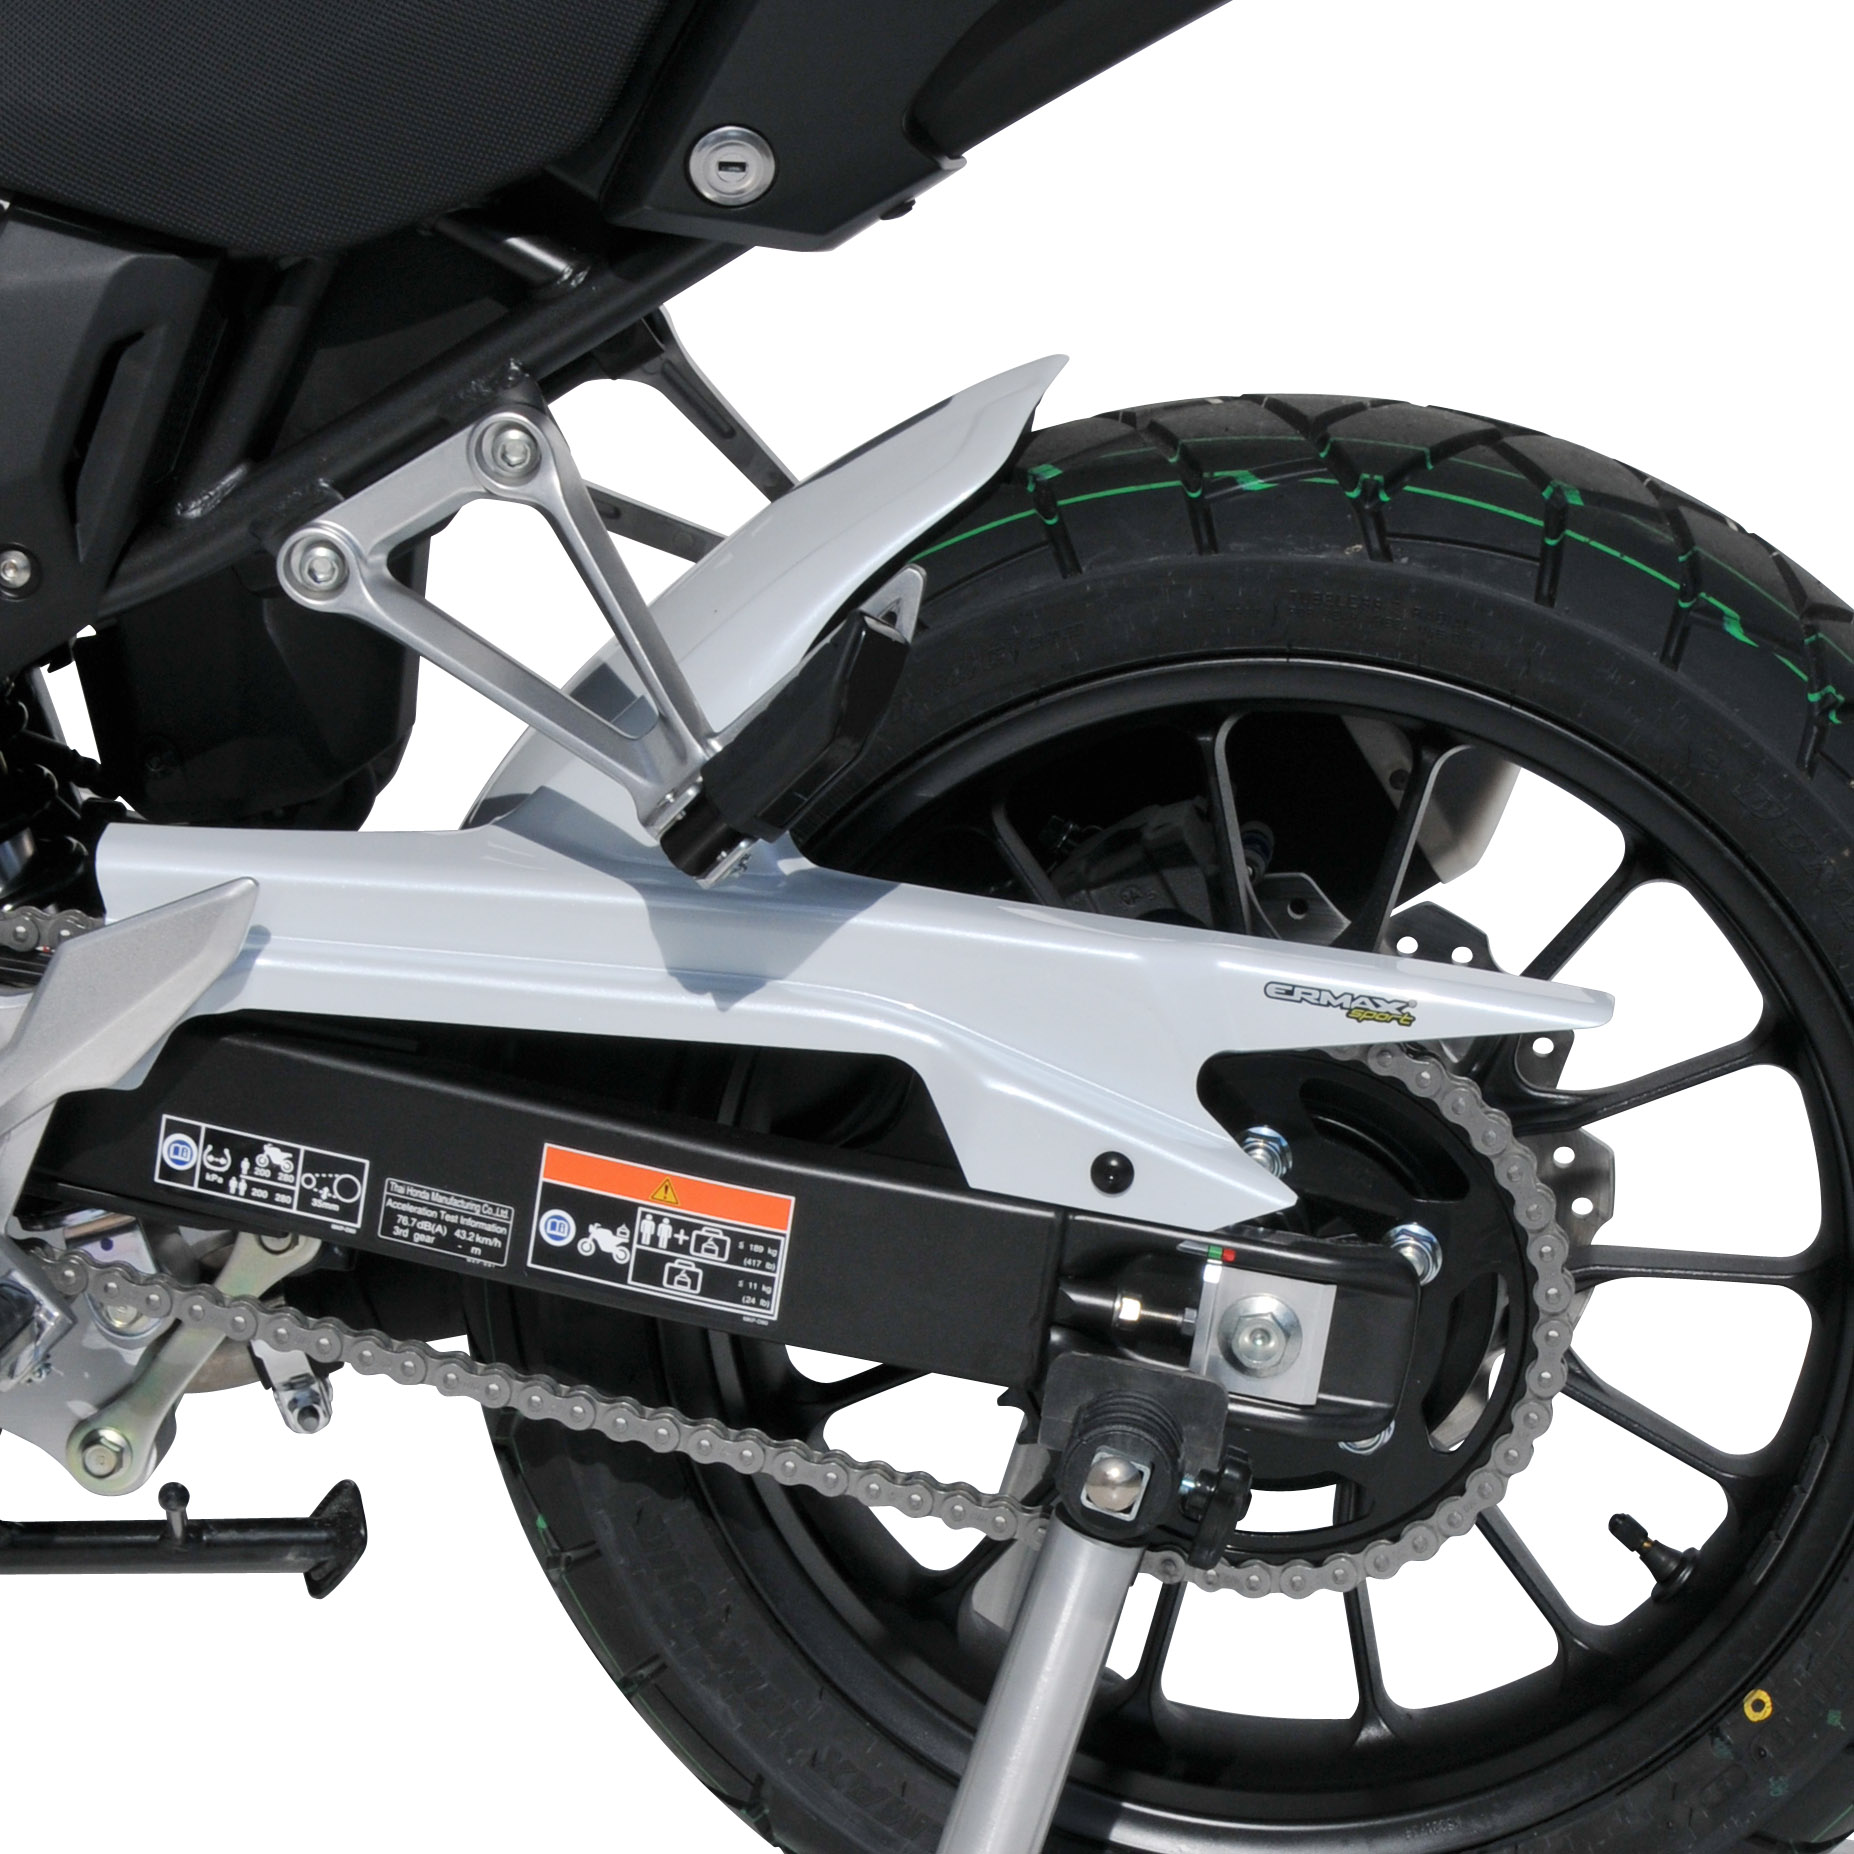 Parafango anteriore Ermax per Honda cb 500 x 2019  2020 grezzo non verniciato  unpainted  2019/2020